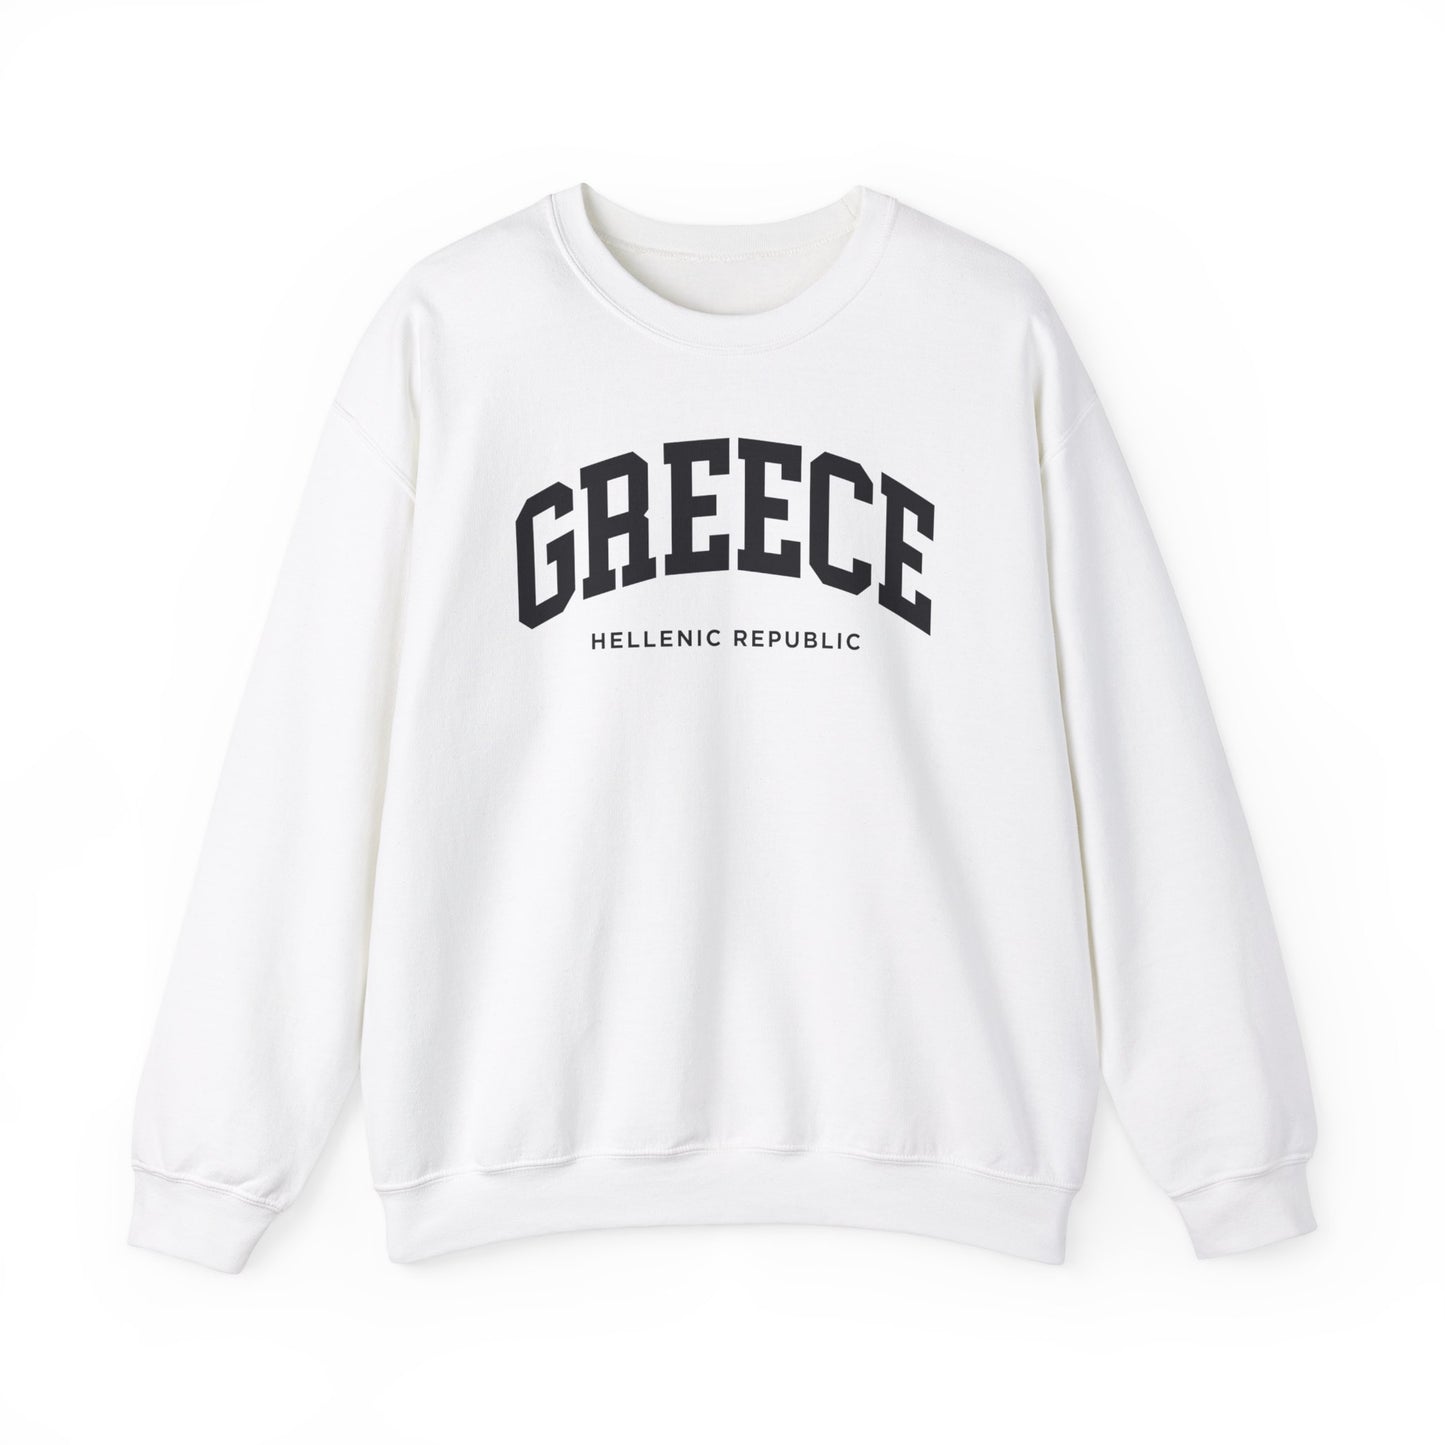 Greece Sweatshirt